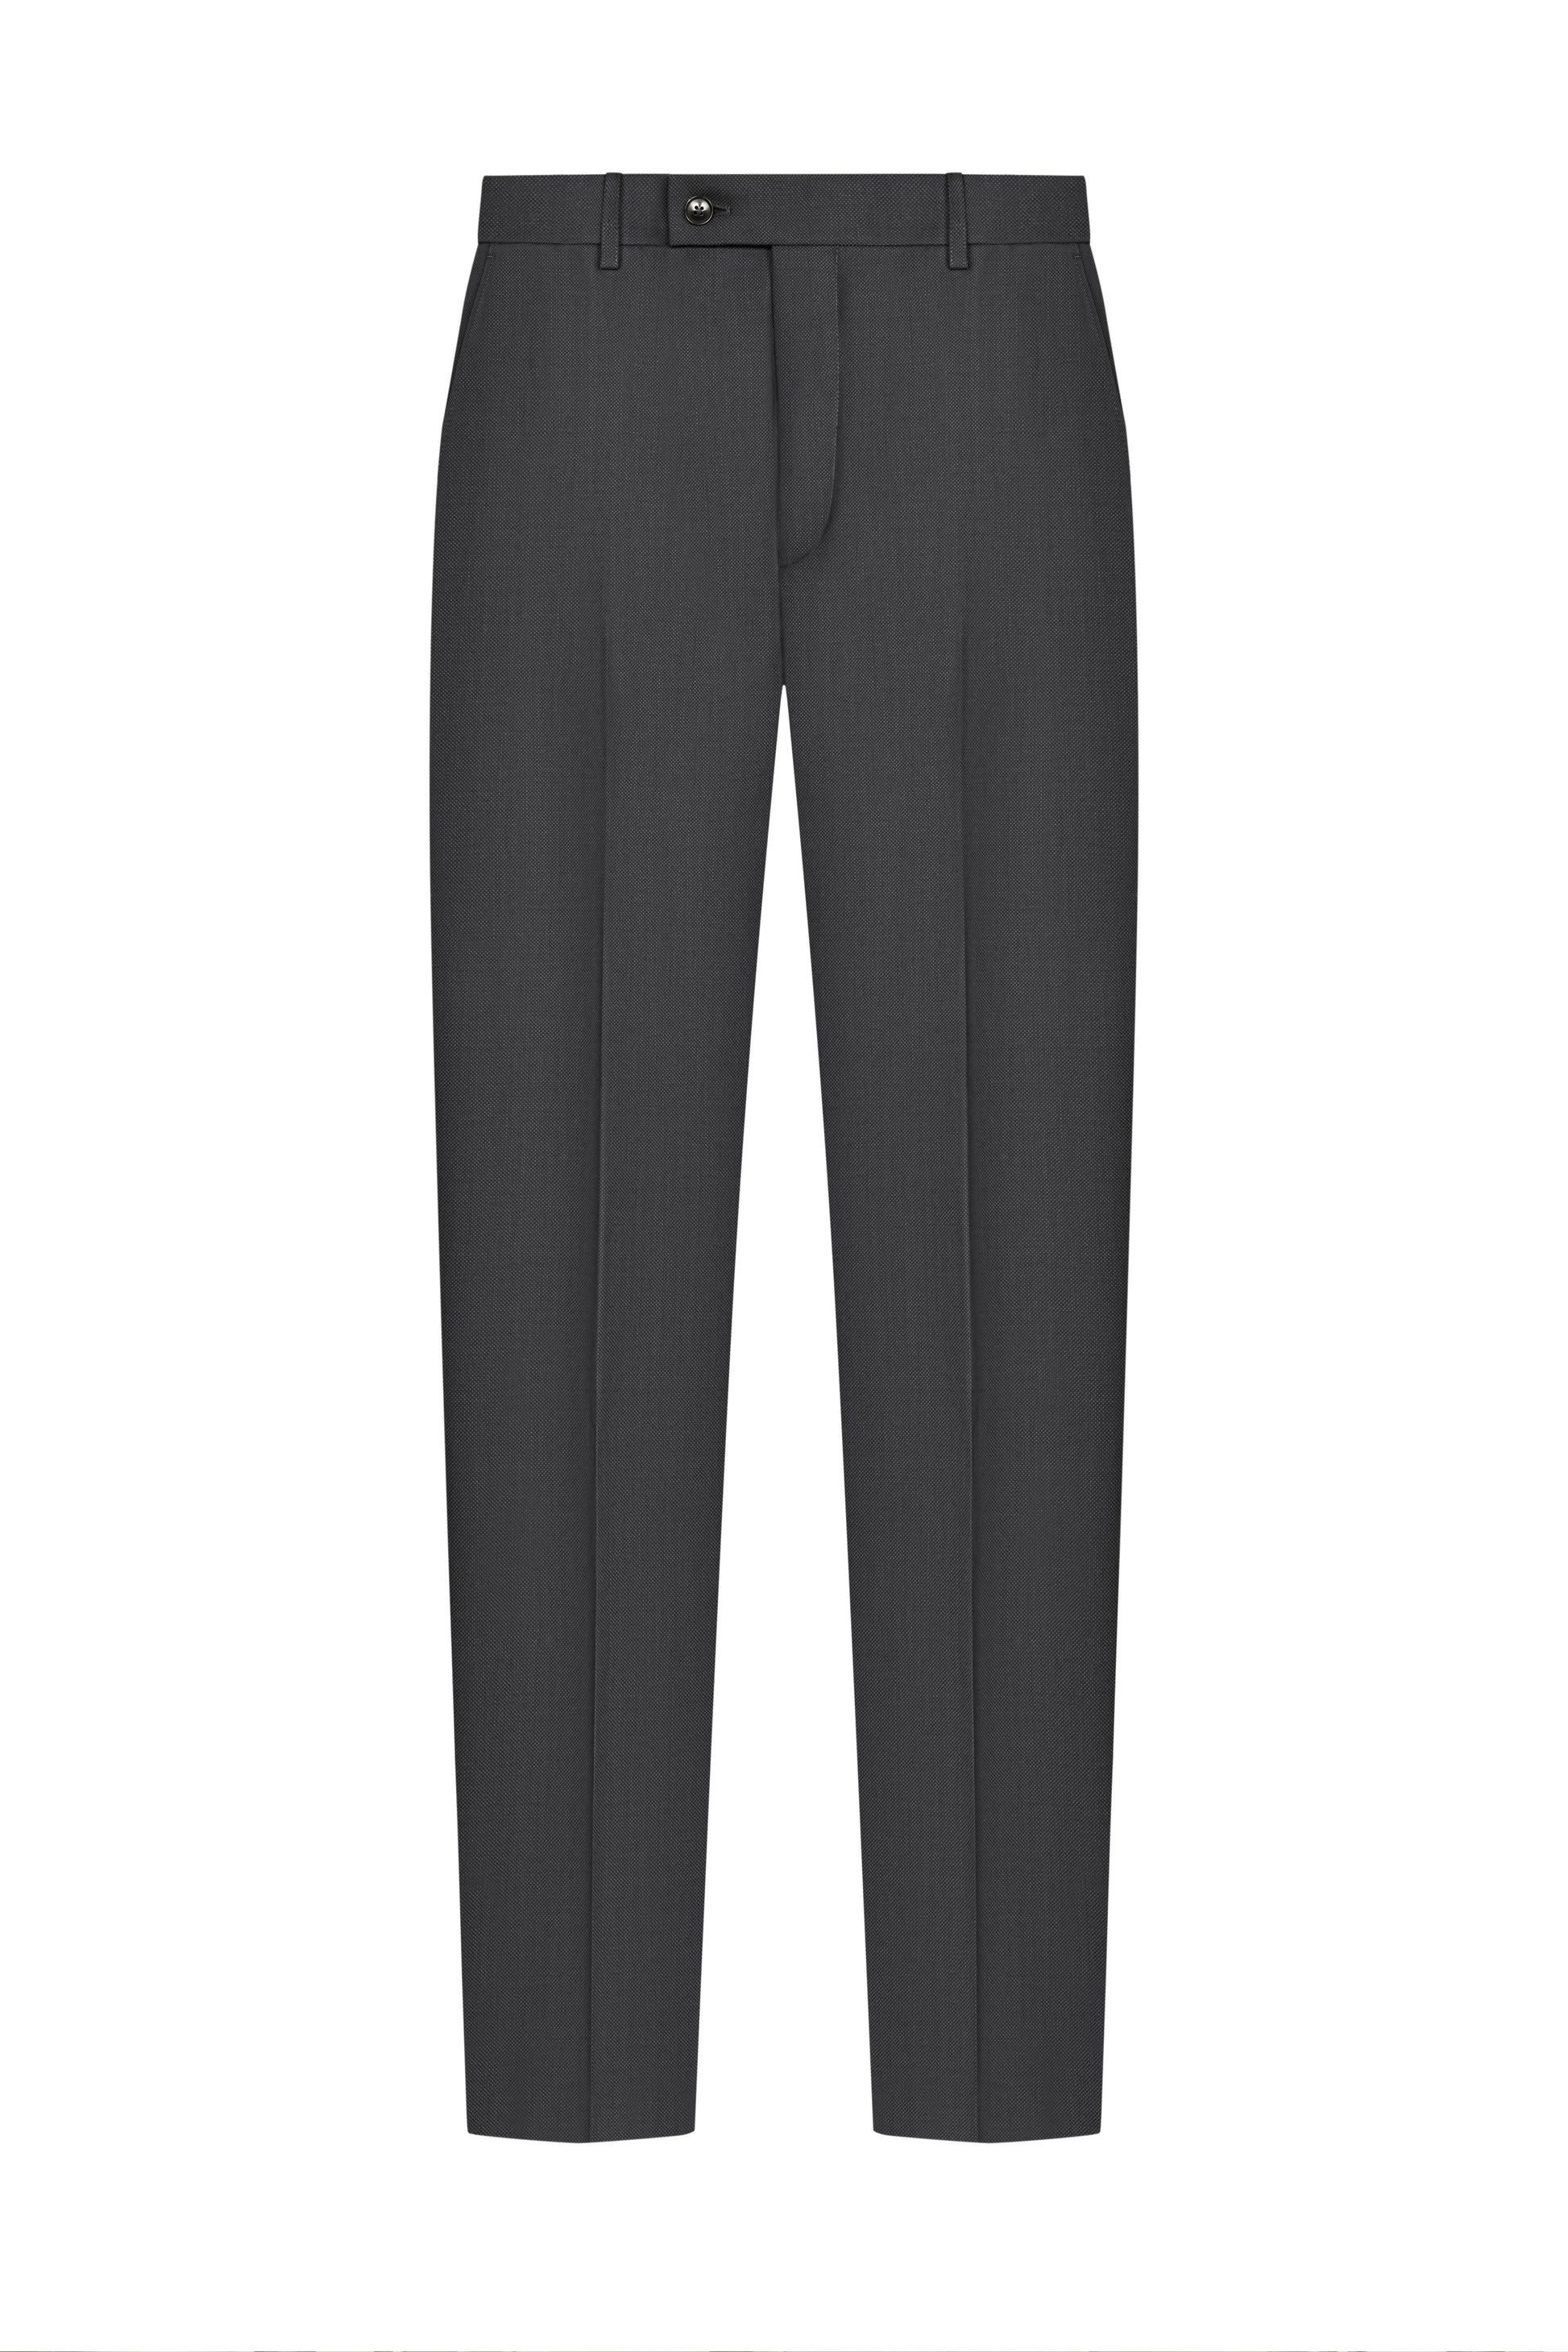 Charcoal Grey Birdseye Suit